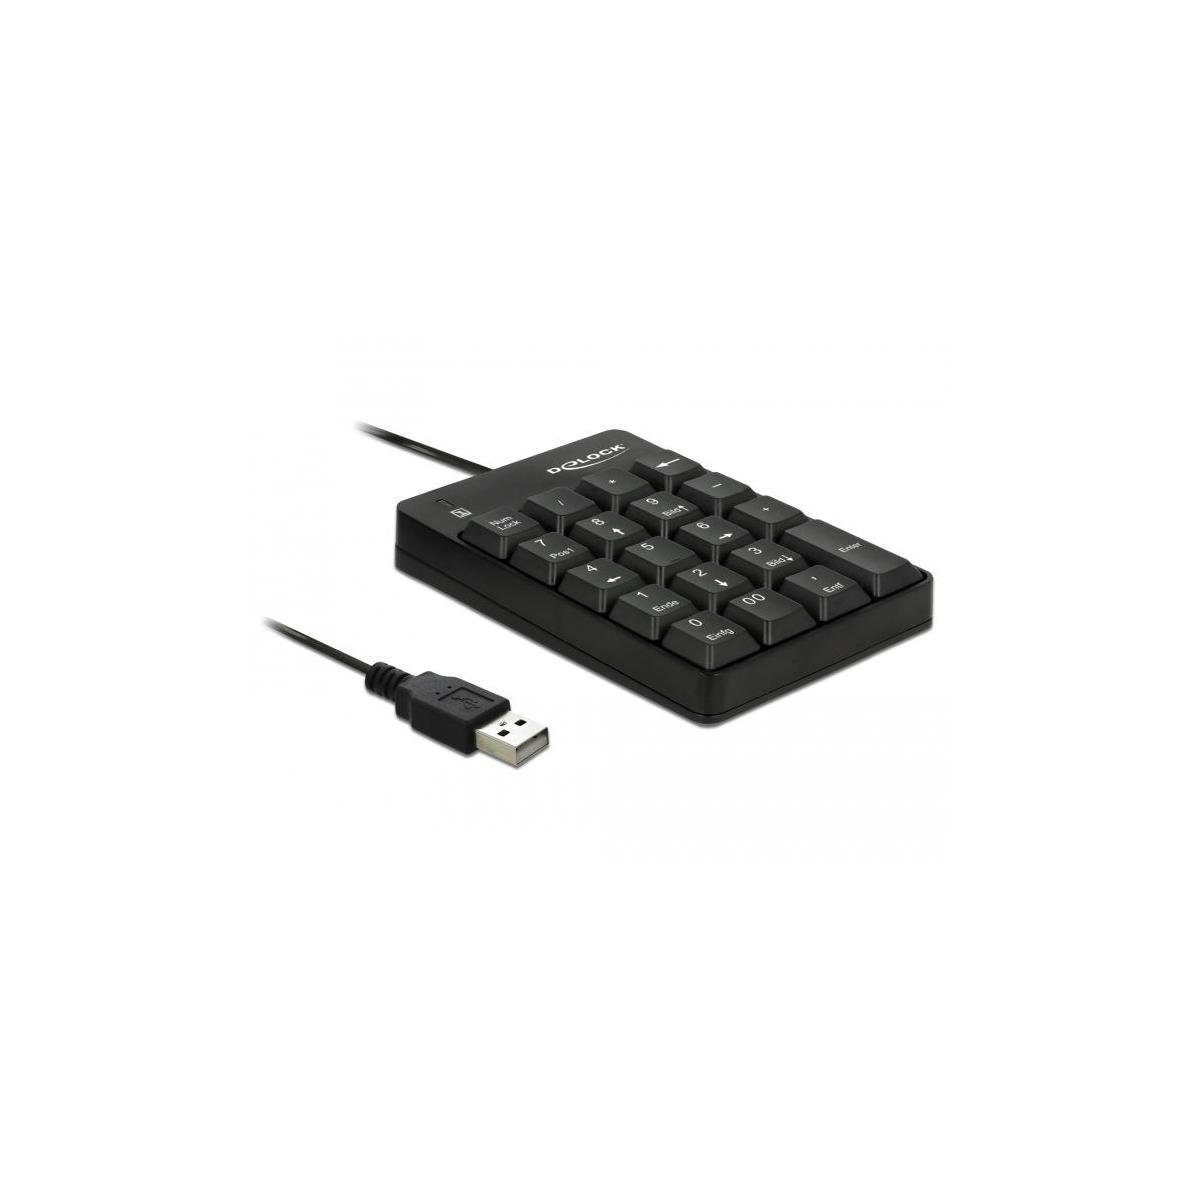 Delock USB Nummernblock 19 Tasten schwarz Tastatur